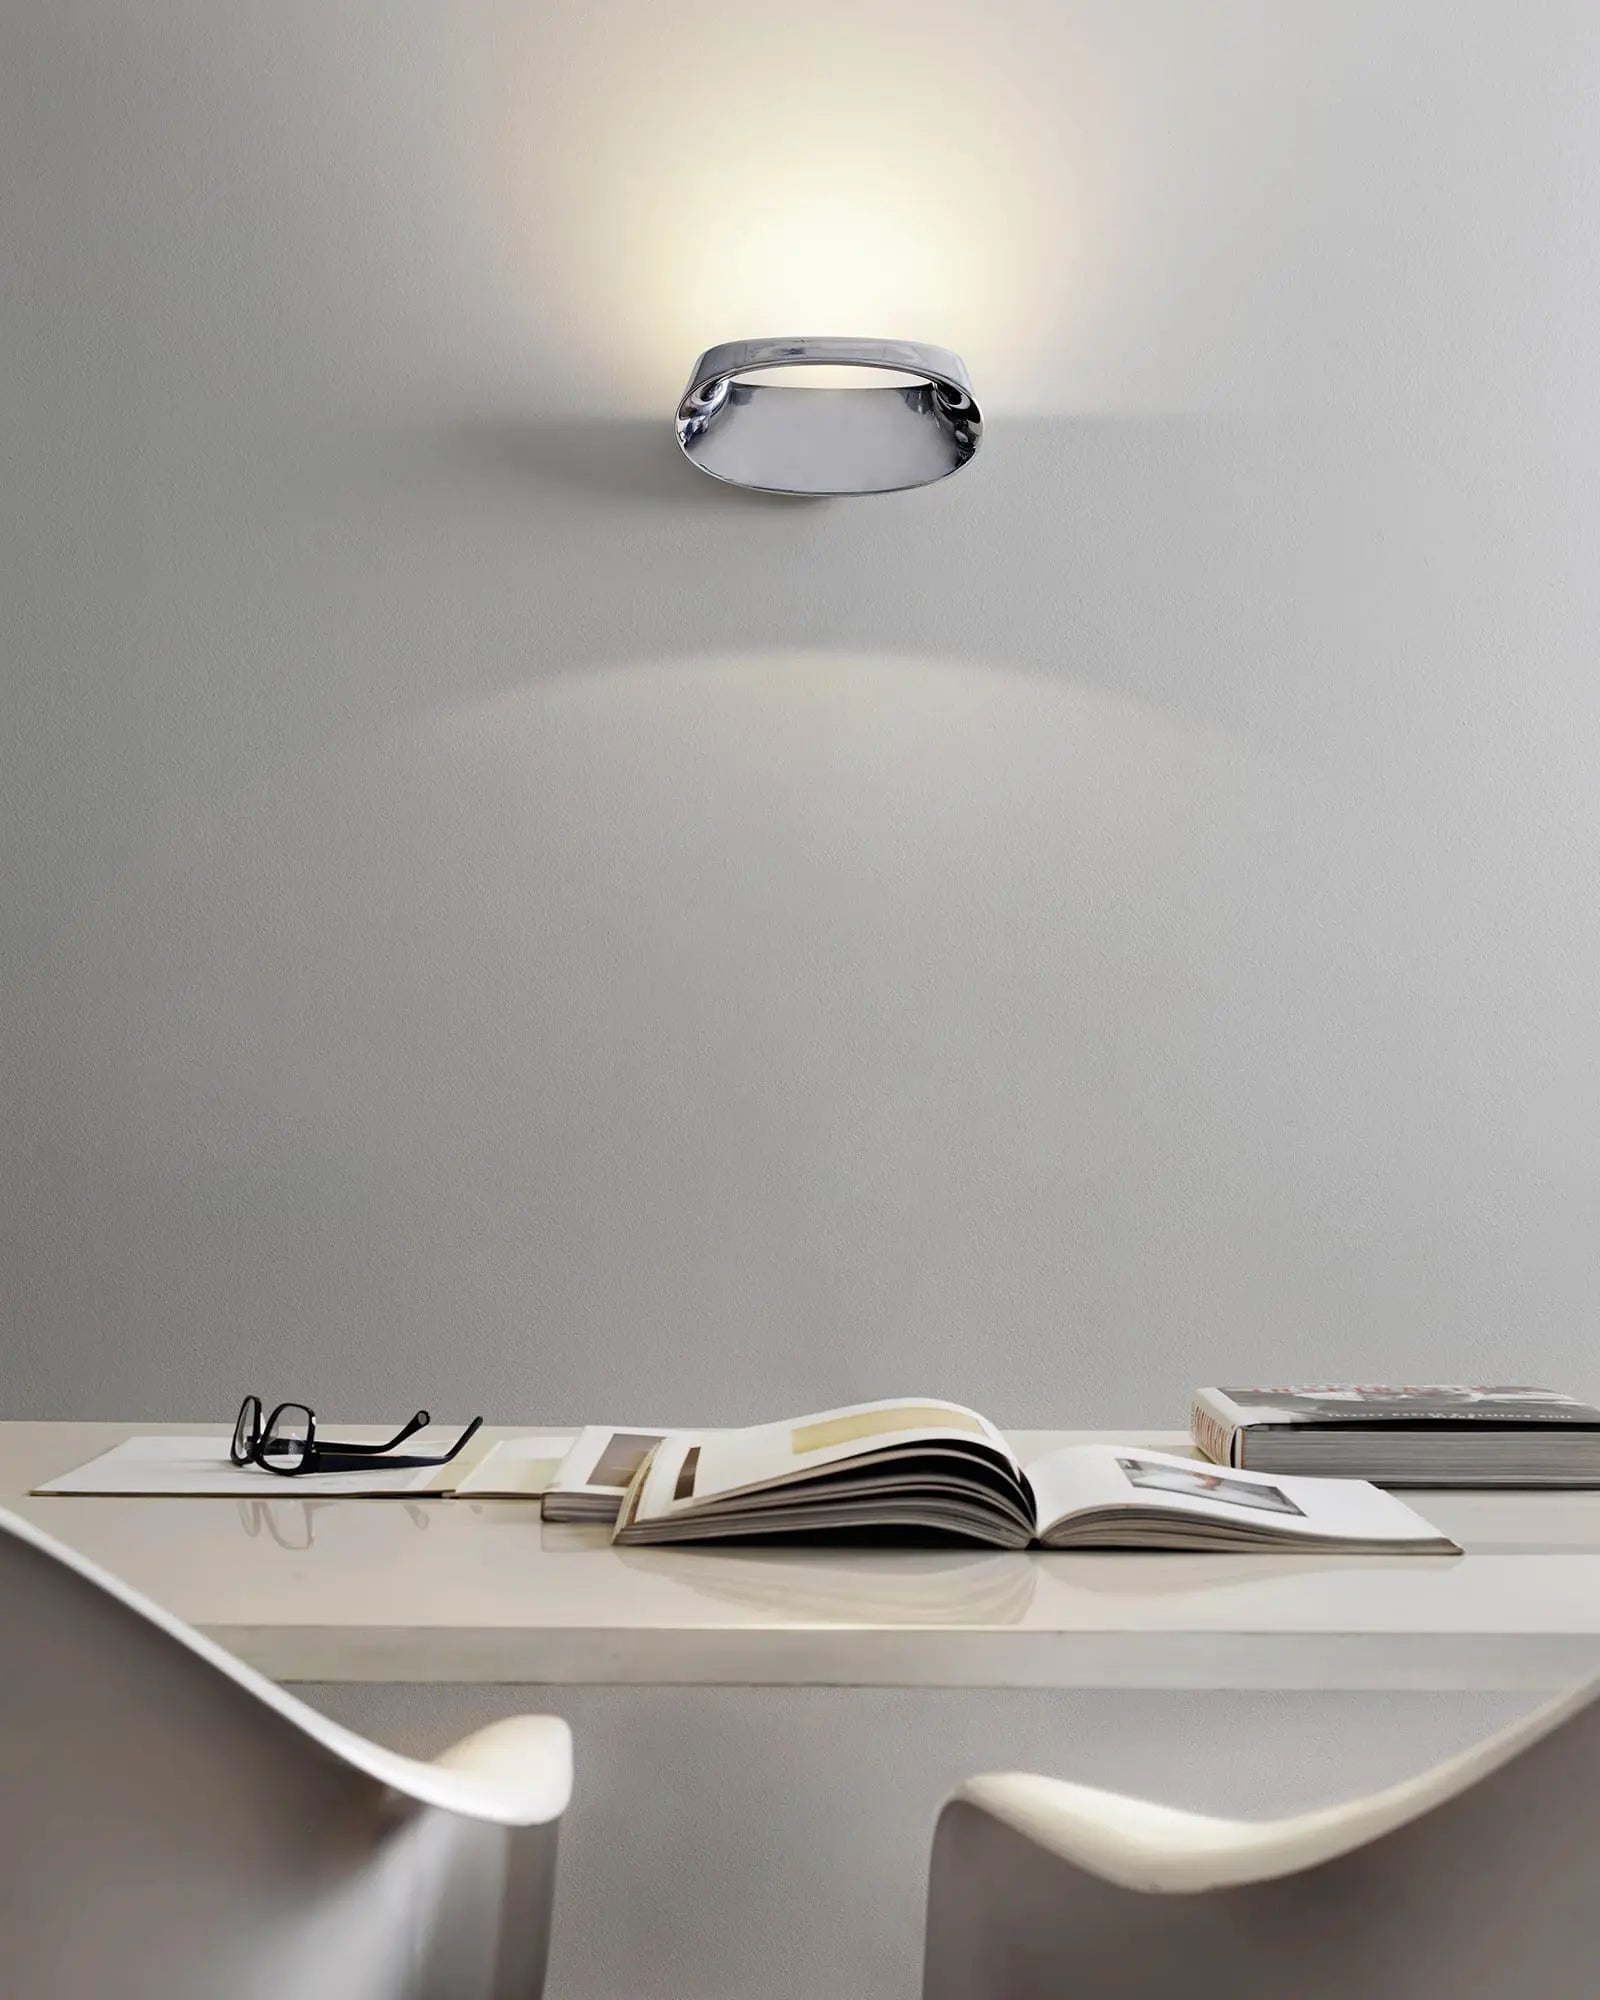 Bonnet contemporary wall light above a desk